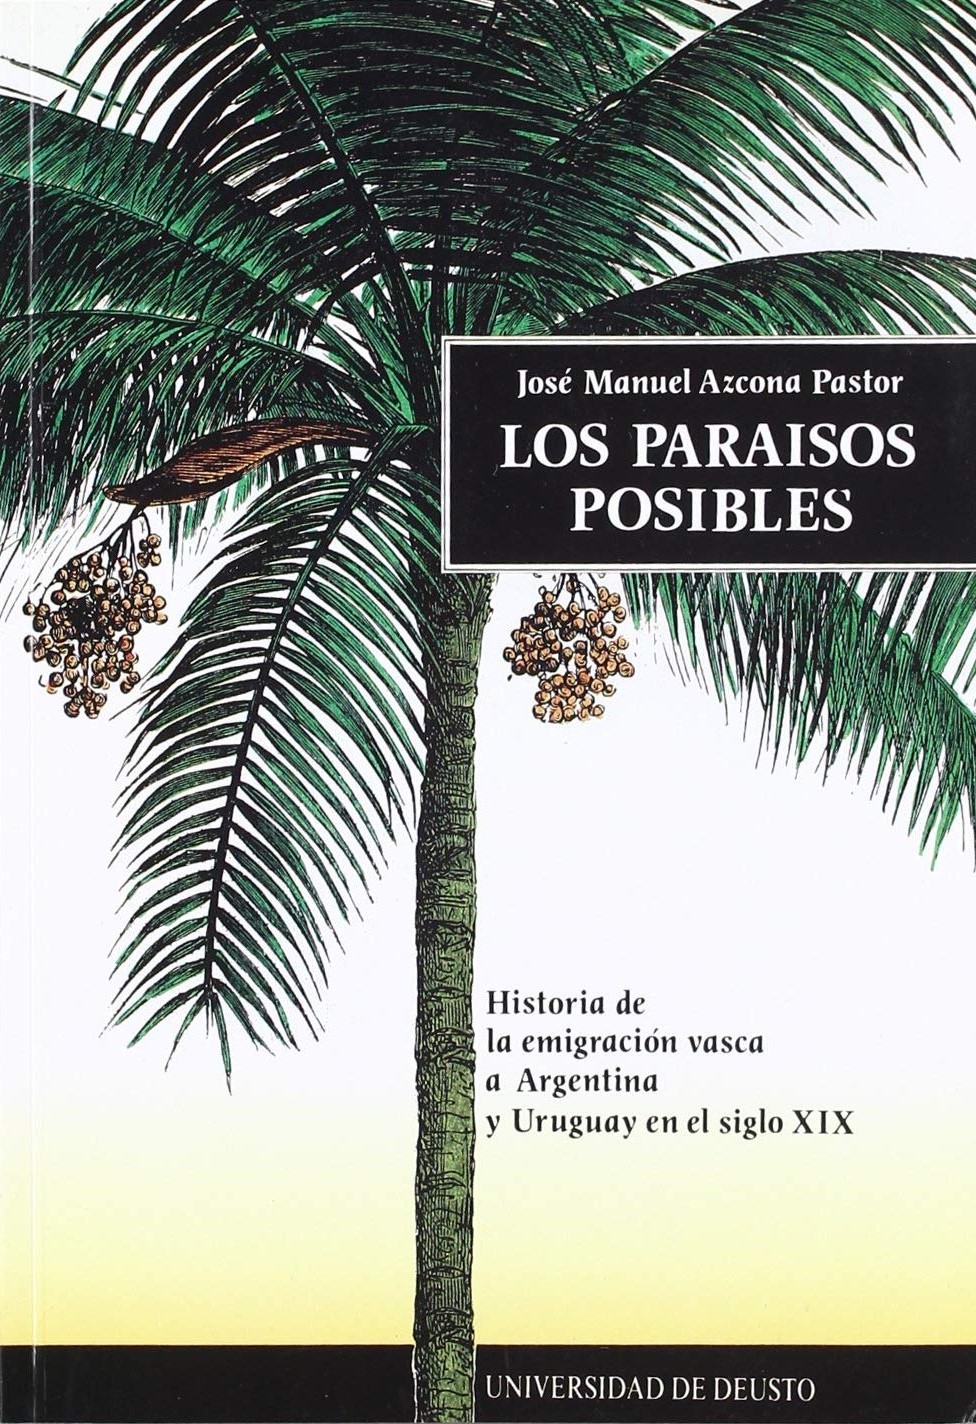 Imagen de portada del libro Los paraísos posibles